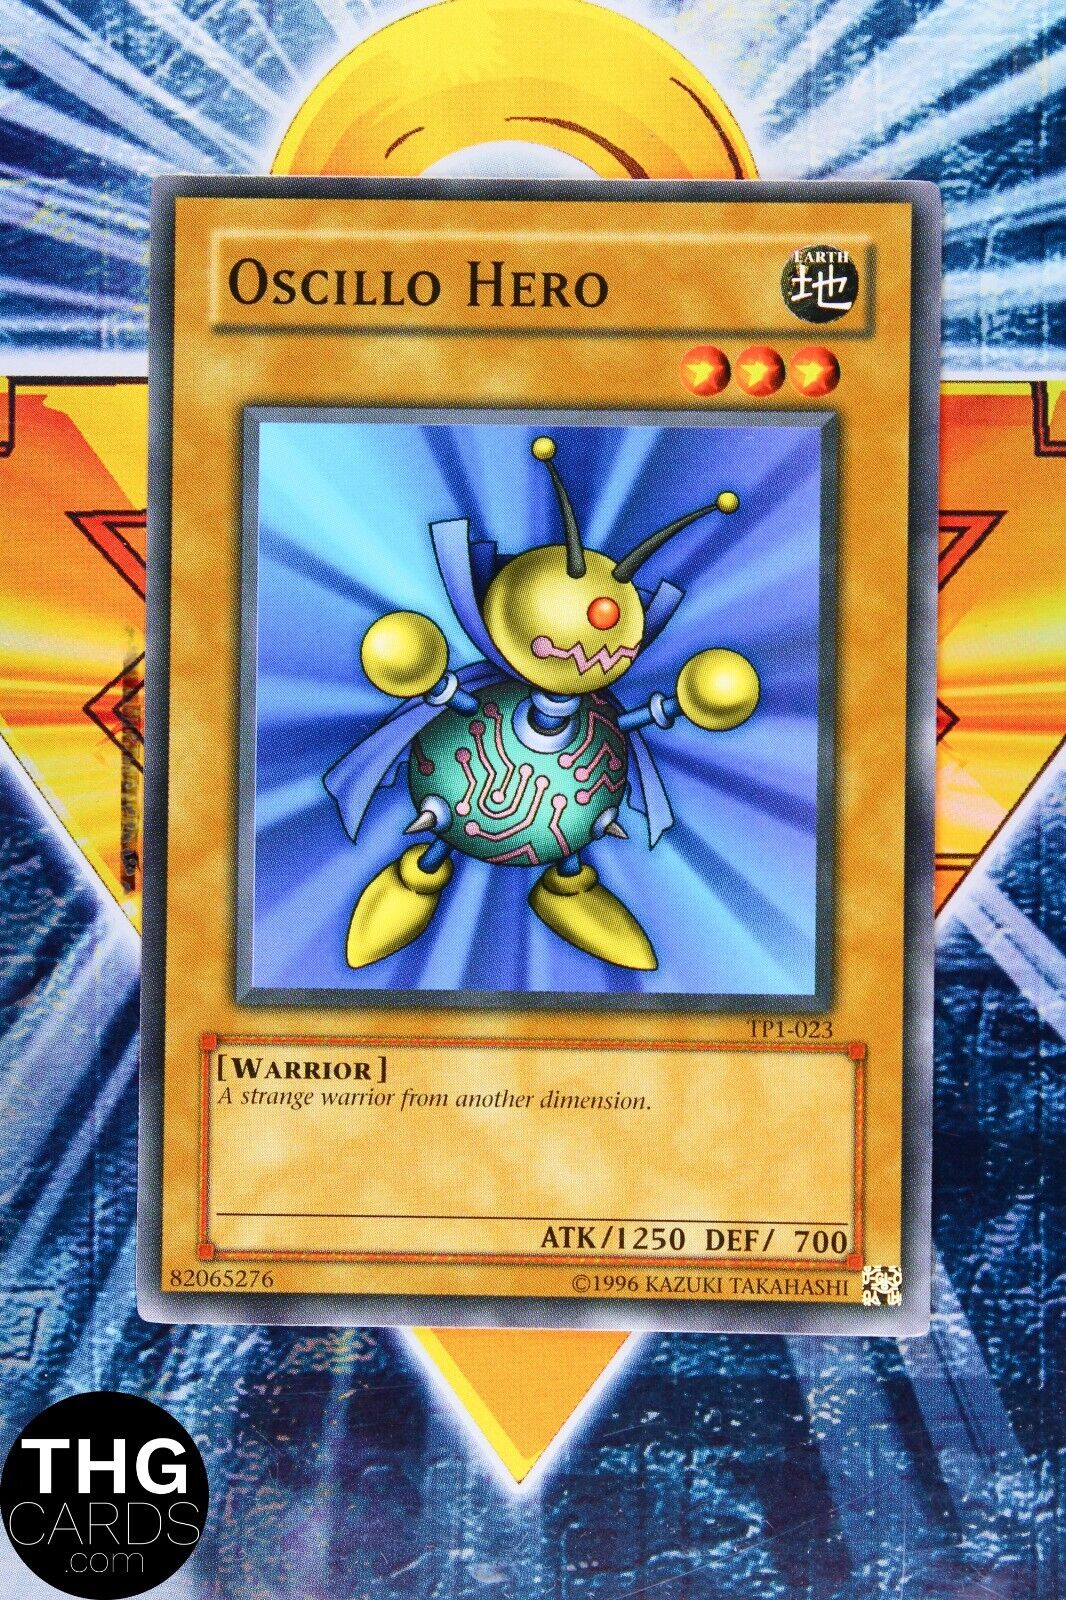 Oscillo Hero TP1-023 Common Yugioh Card